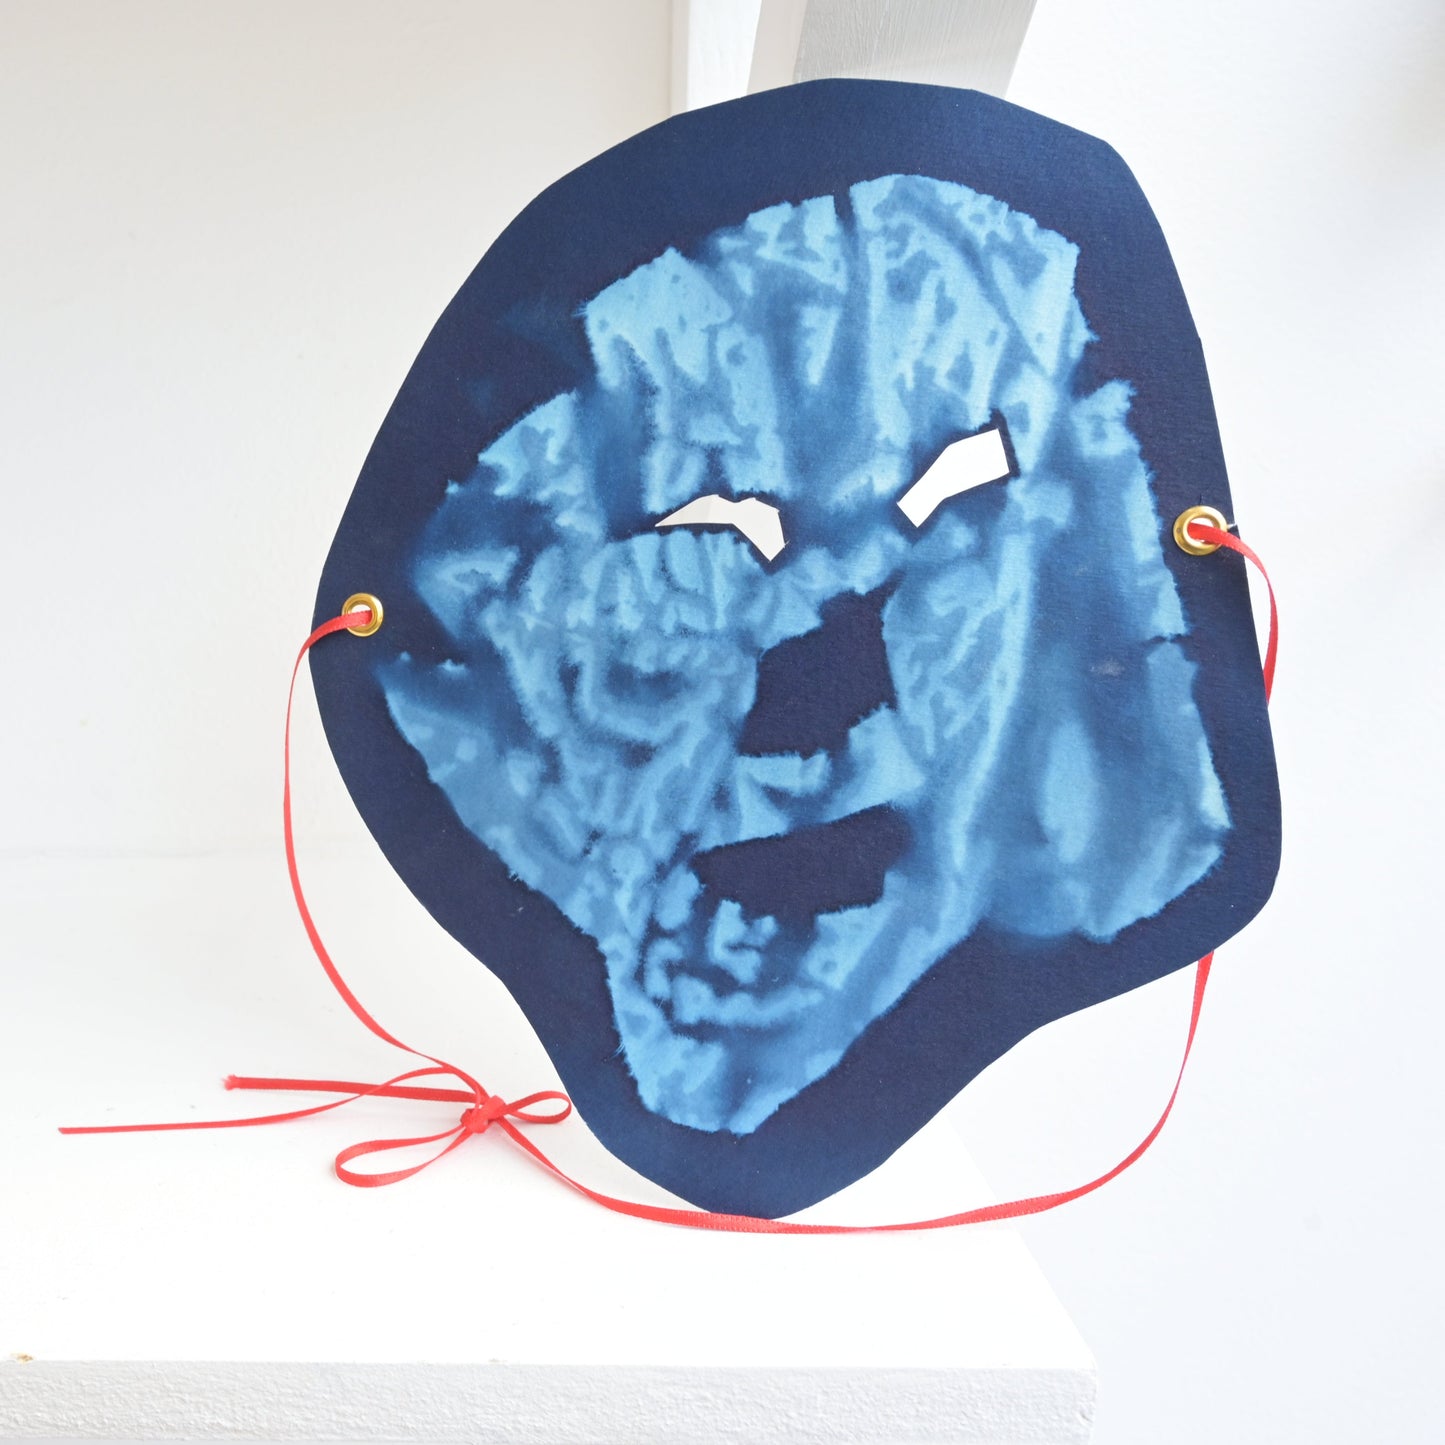 Ben Brown: Mask